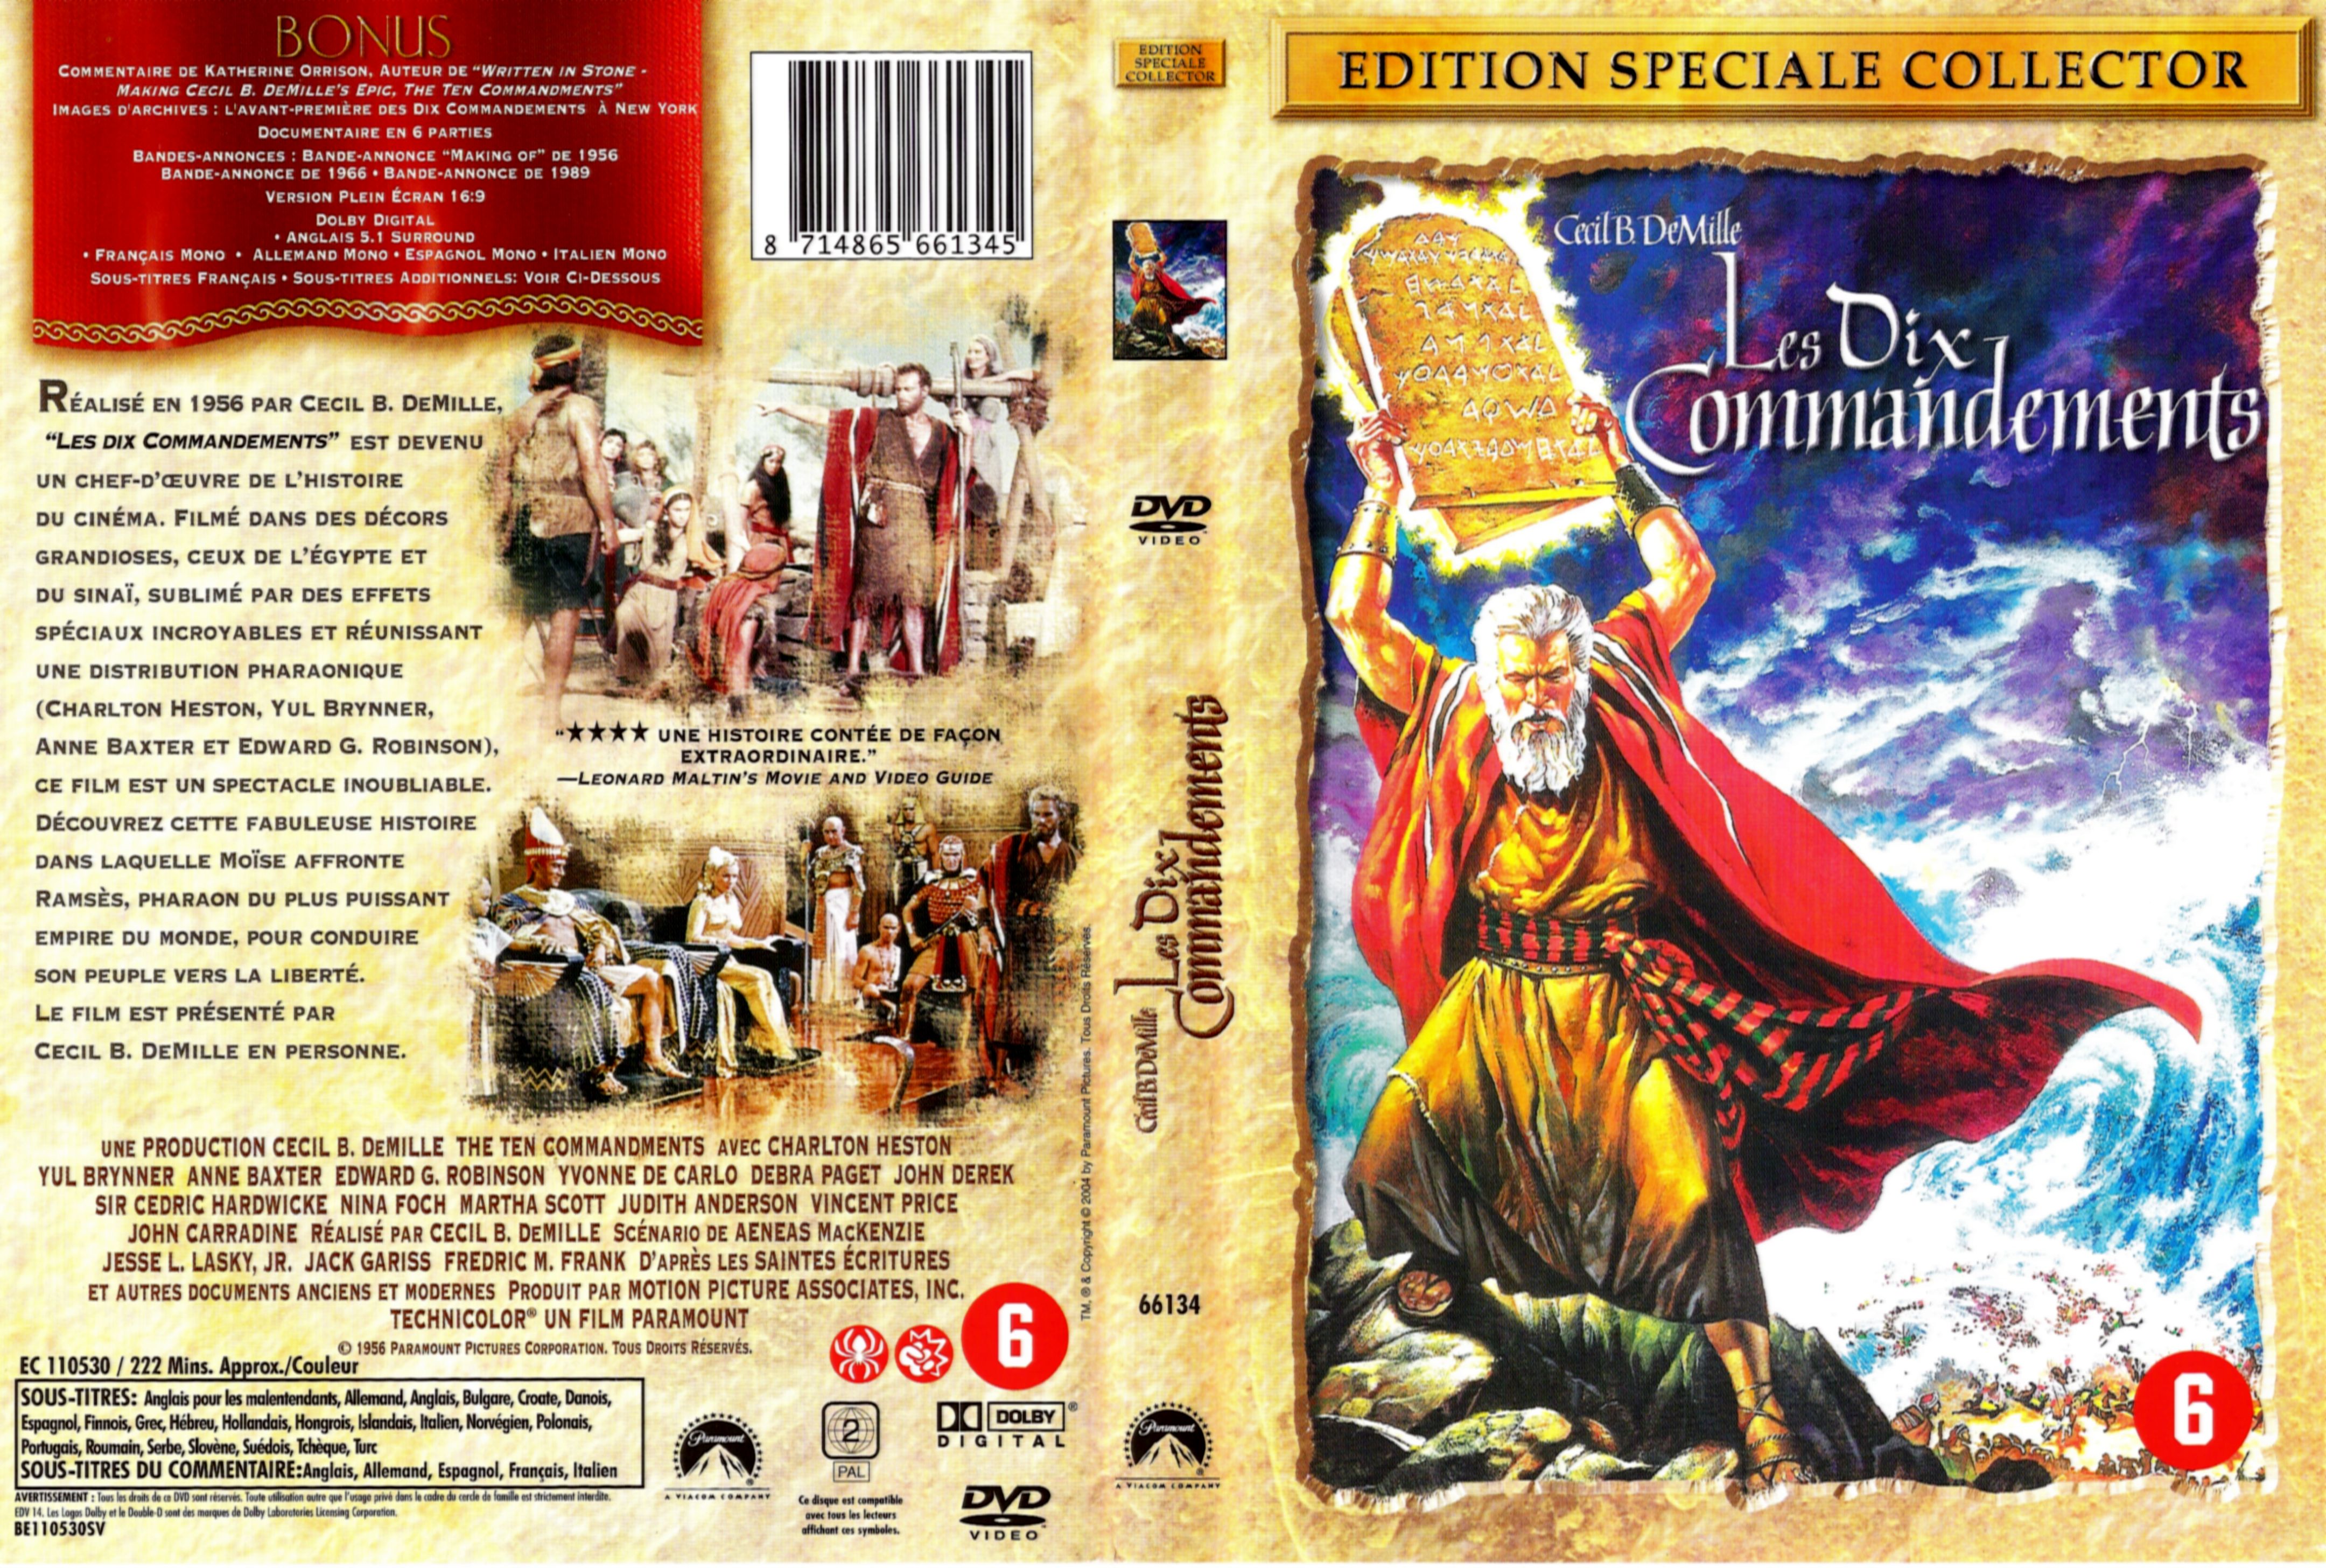 Jaquette DVD Les dix commandements v2